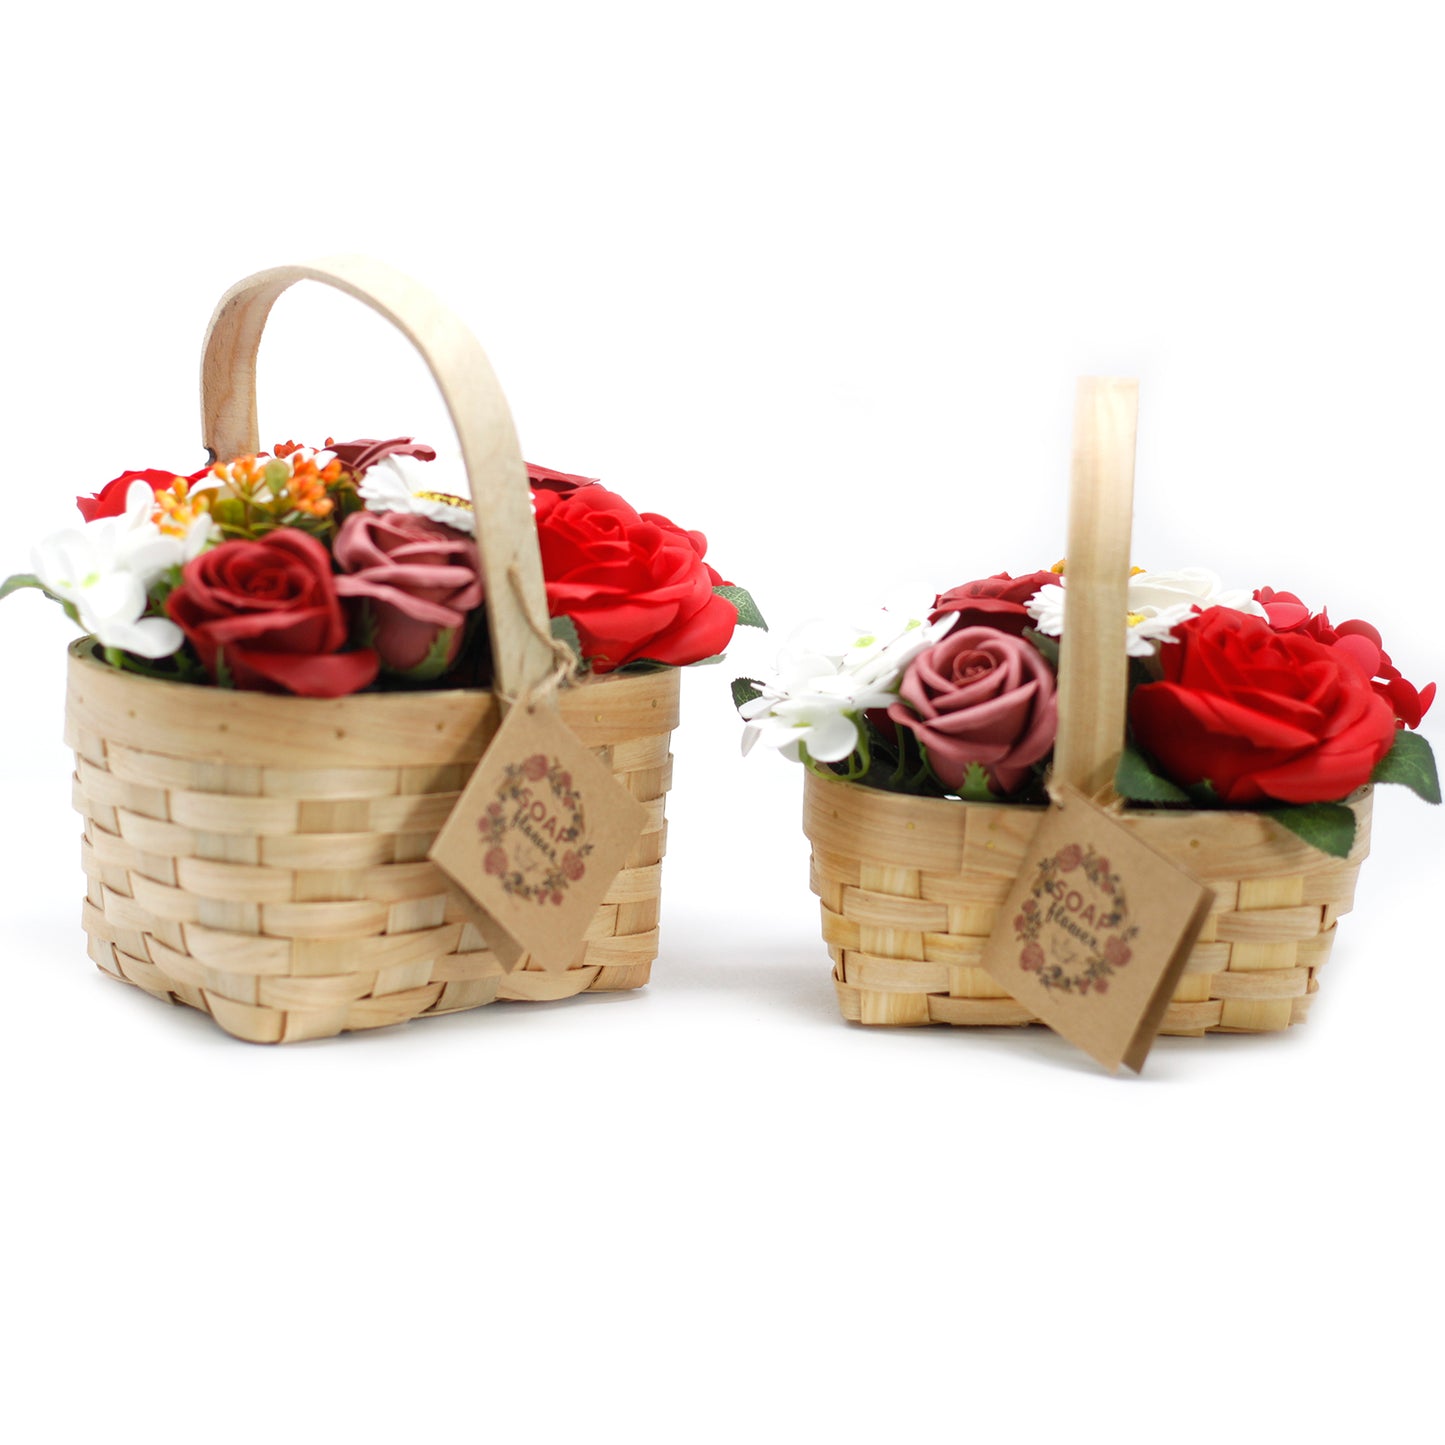 Large Red Soap Flowers Bouquet in Wicker Basket